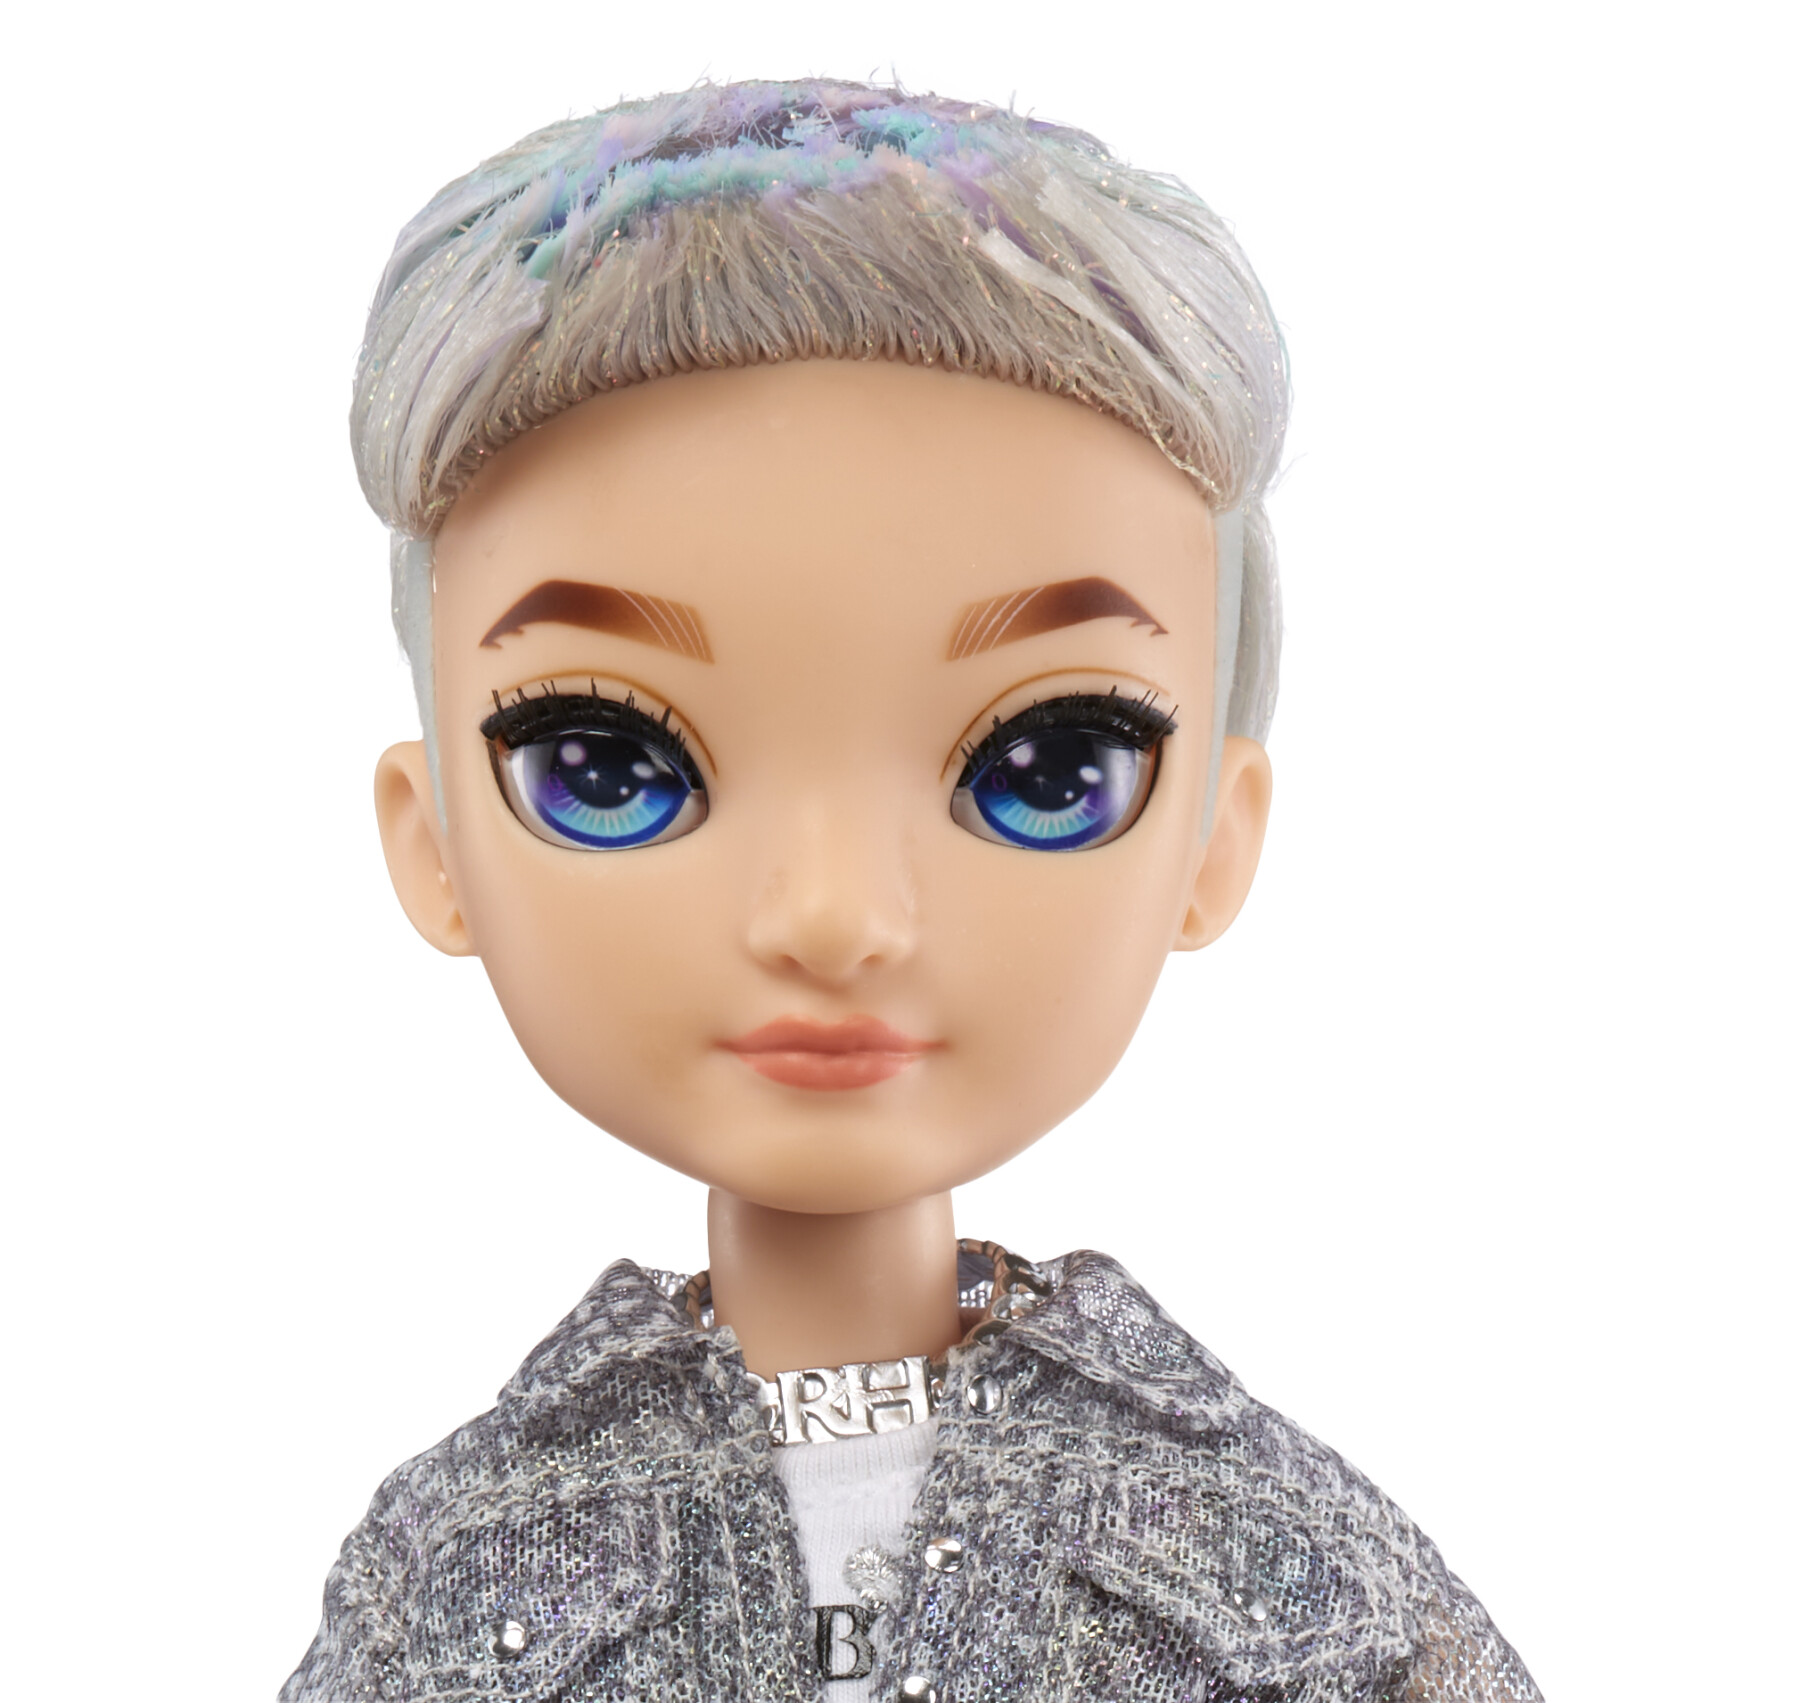 Rainbow high fashion doll serie 5: aidan russel. bambola con vestito alla moda e oltre 10 accessori di gioco colorati - Rainbow High